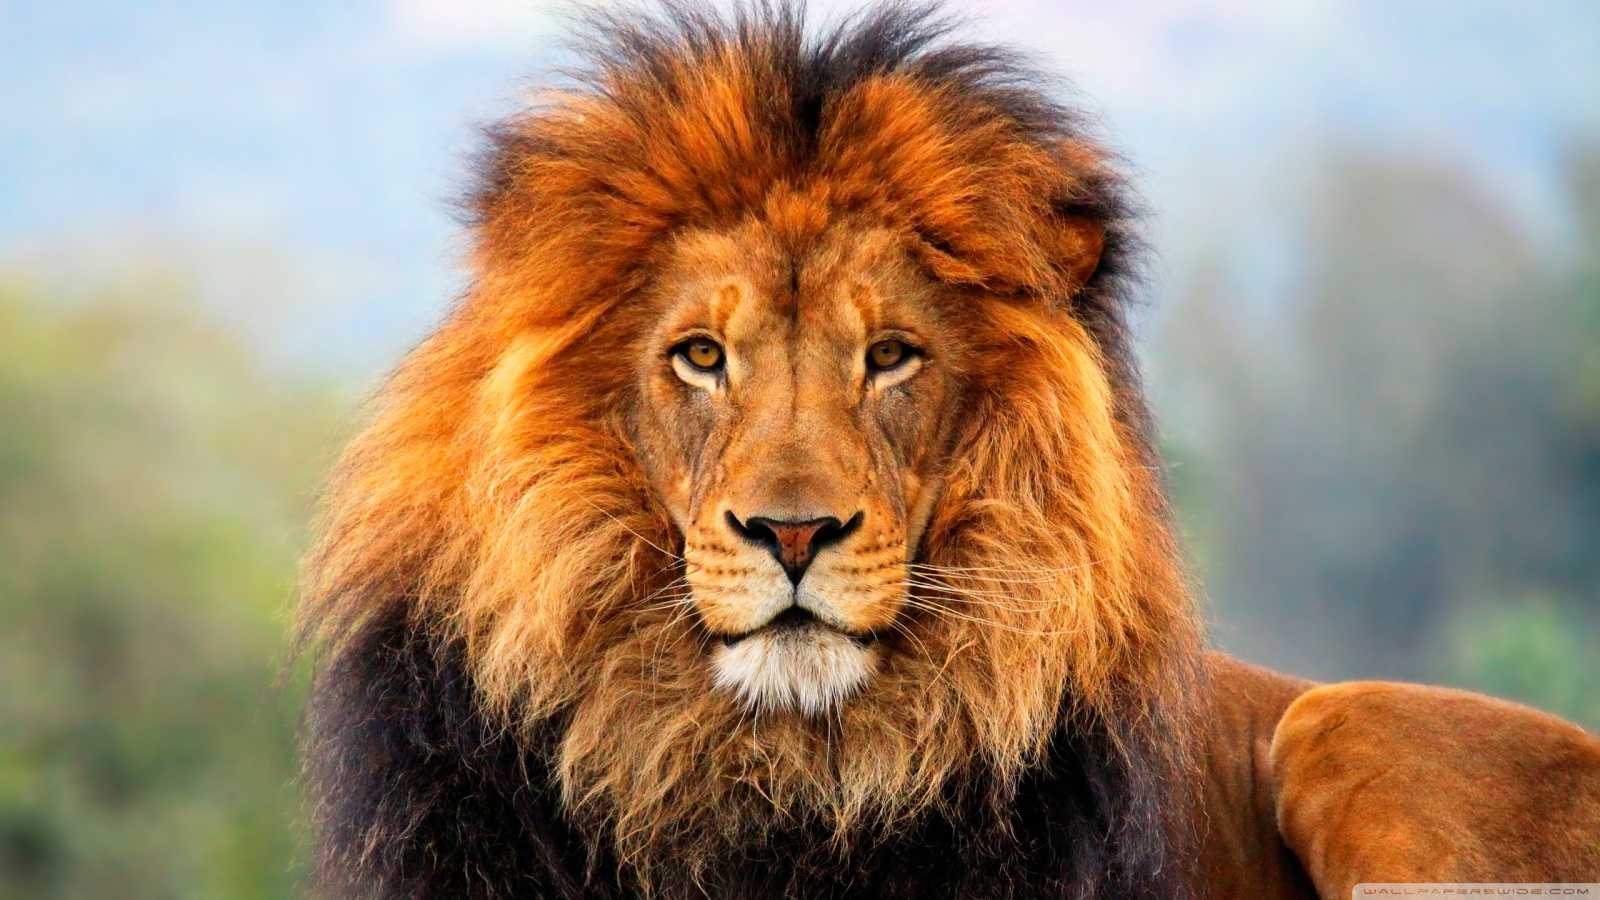 Αναυδοι οι επισκέπτες: Λιοντάρι κατέρρευσε σε ζωολογικό κήπο – Bίντεο